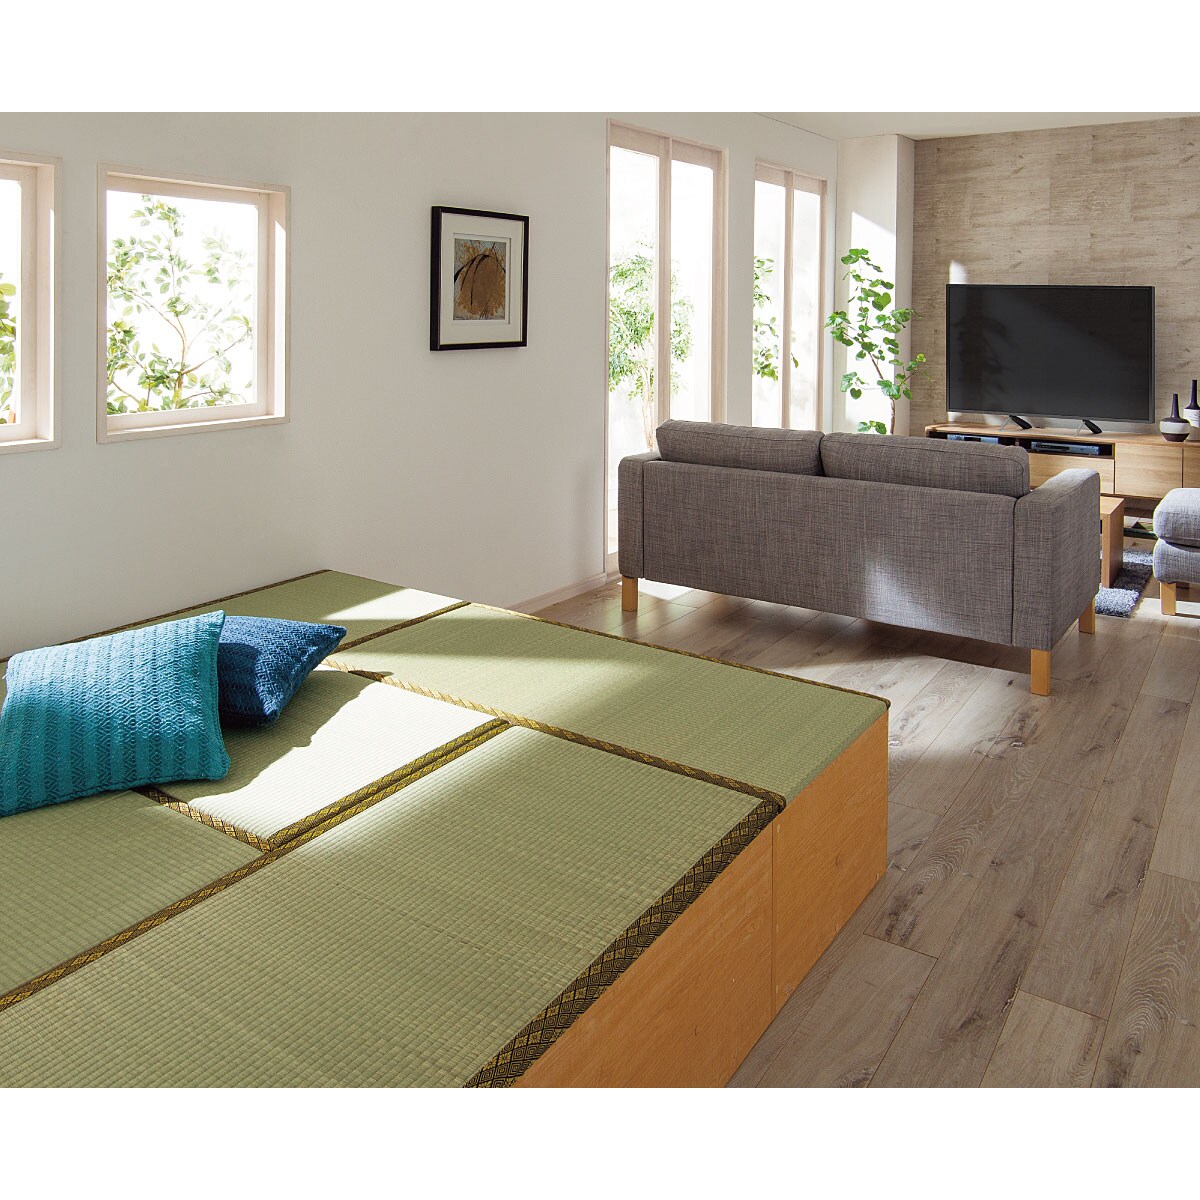 収納高床ユニット畳(天然い草)/日本製 小上がり 家具の通販ならセシール(cecile)